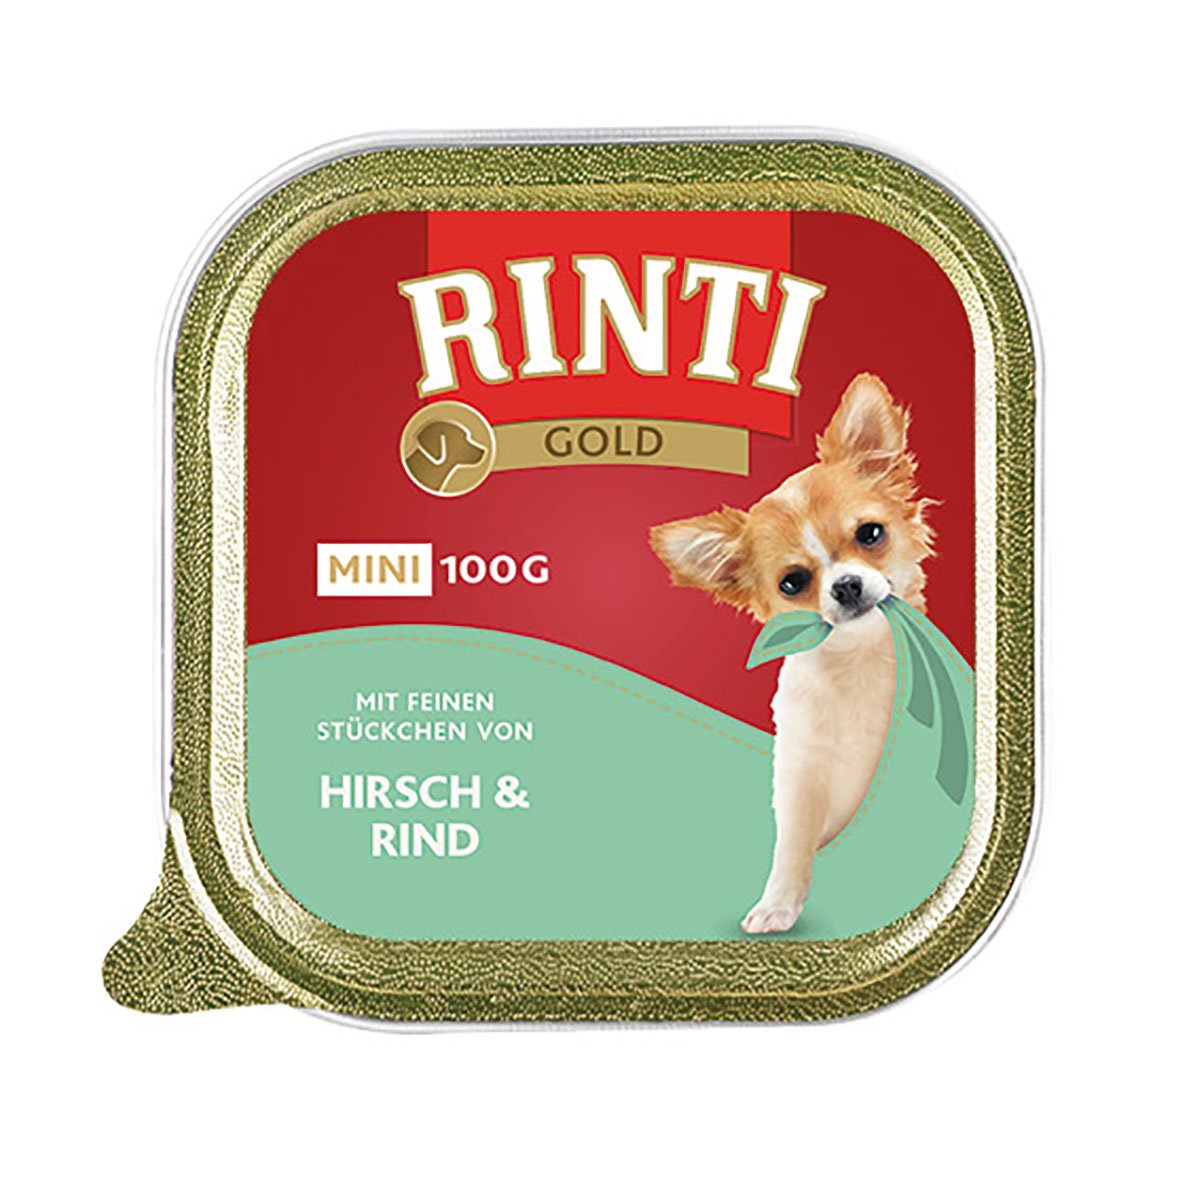 Rinti Gold Mini feine Stückchen von Hirsch & Rind 16x100g von Rinti